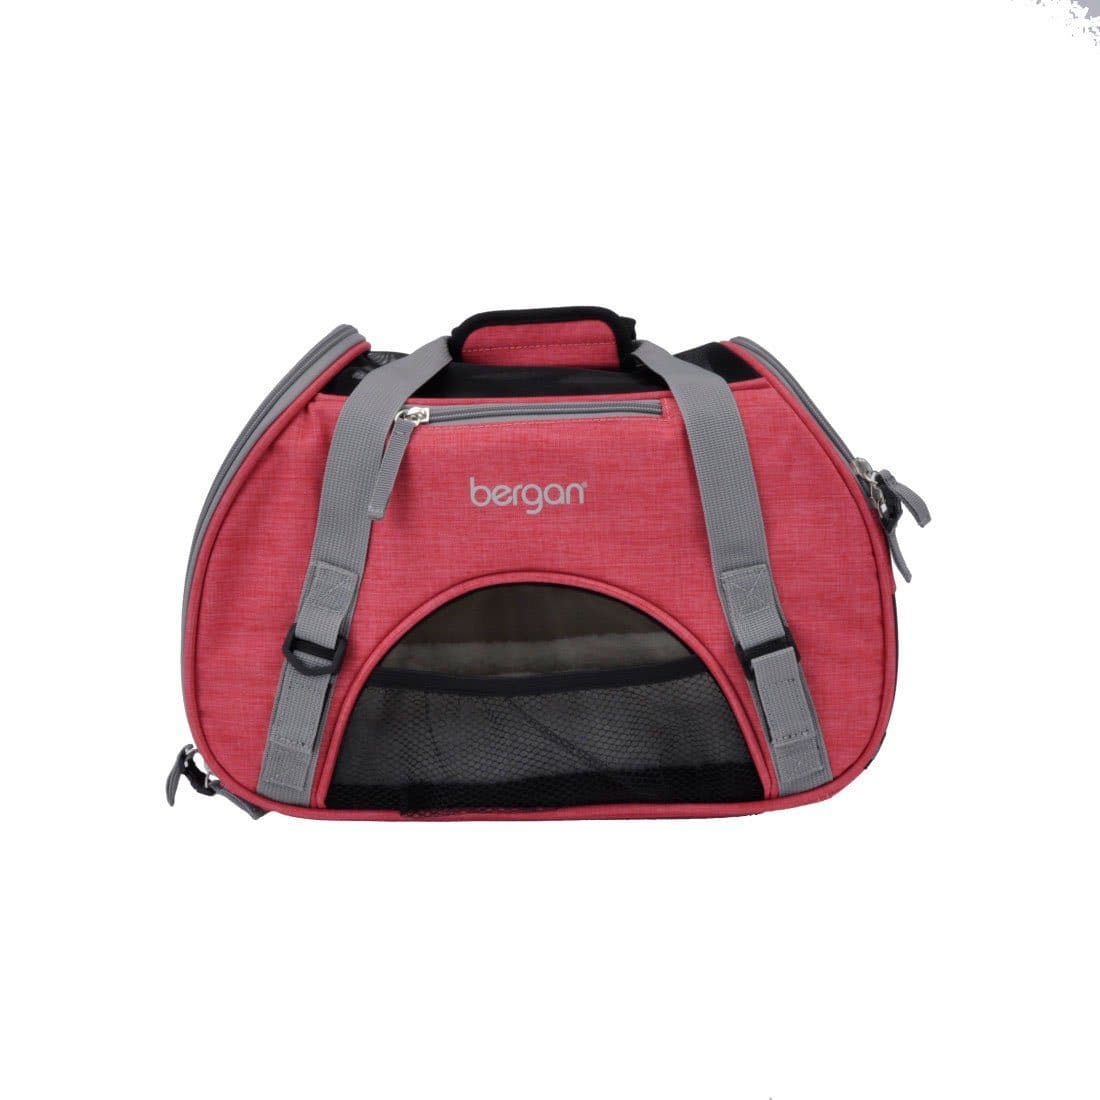 Transportadora Comfort en Colores Rosa - Comfort Carrier de Bergan®